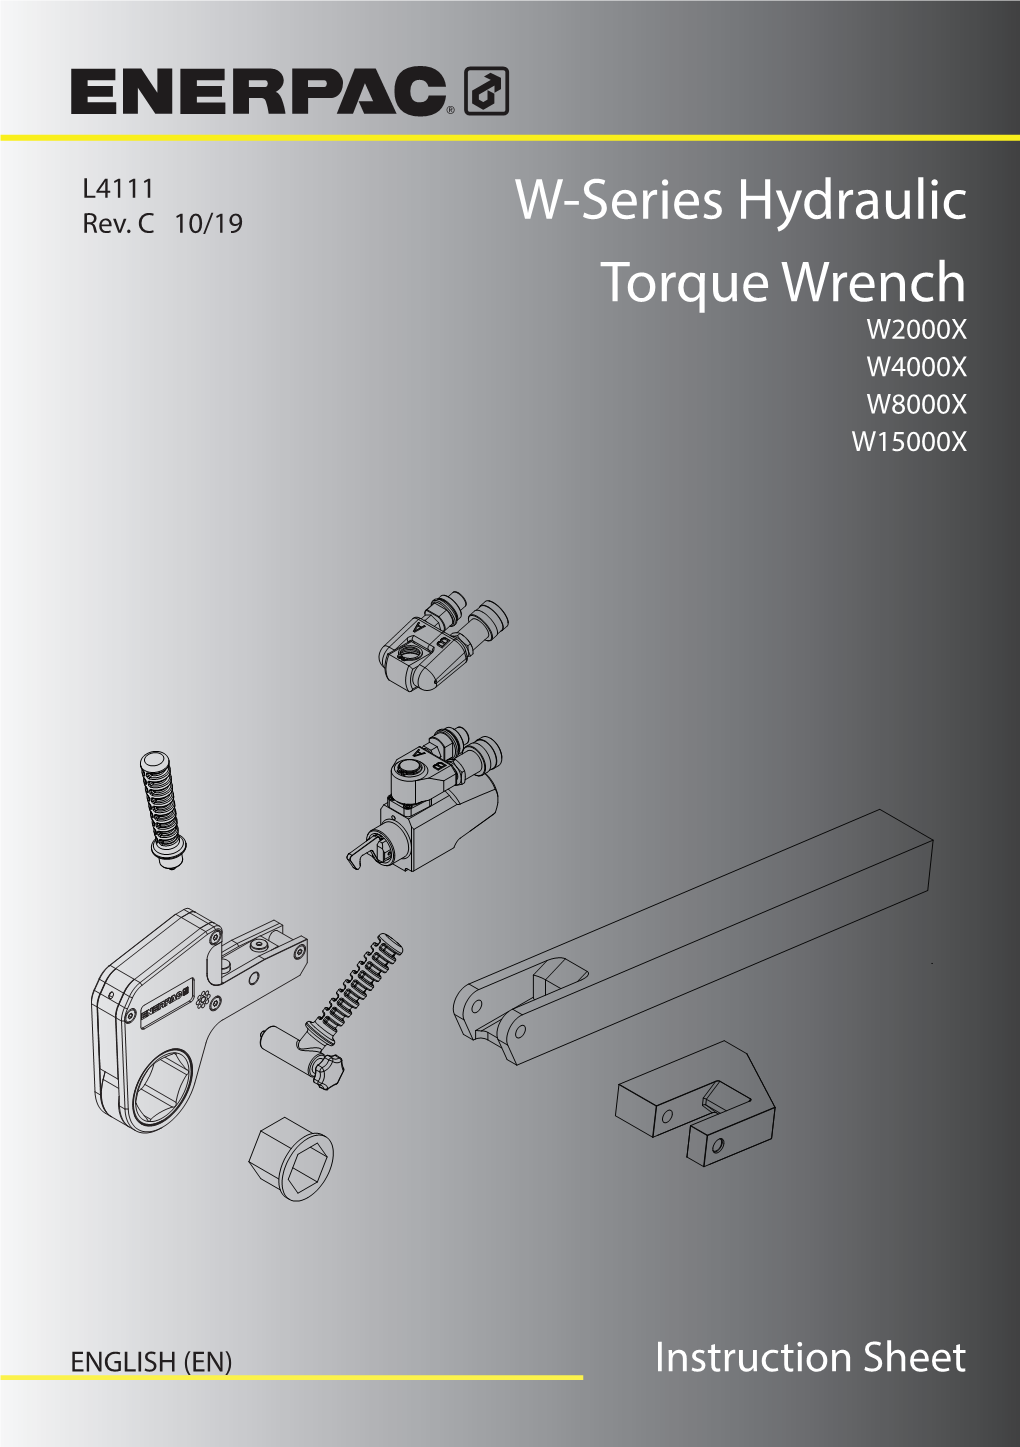 W-Series Hydraulic Torque Wrench W2000X W4000X W8000X W15000X